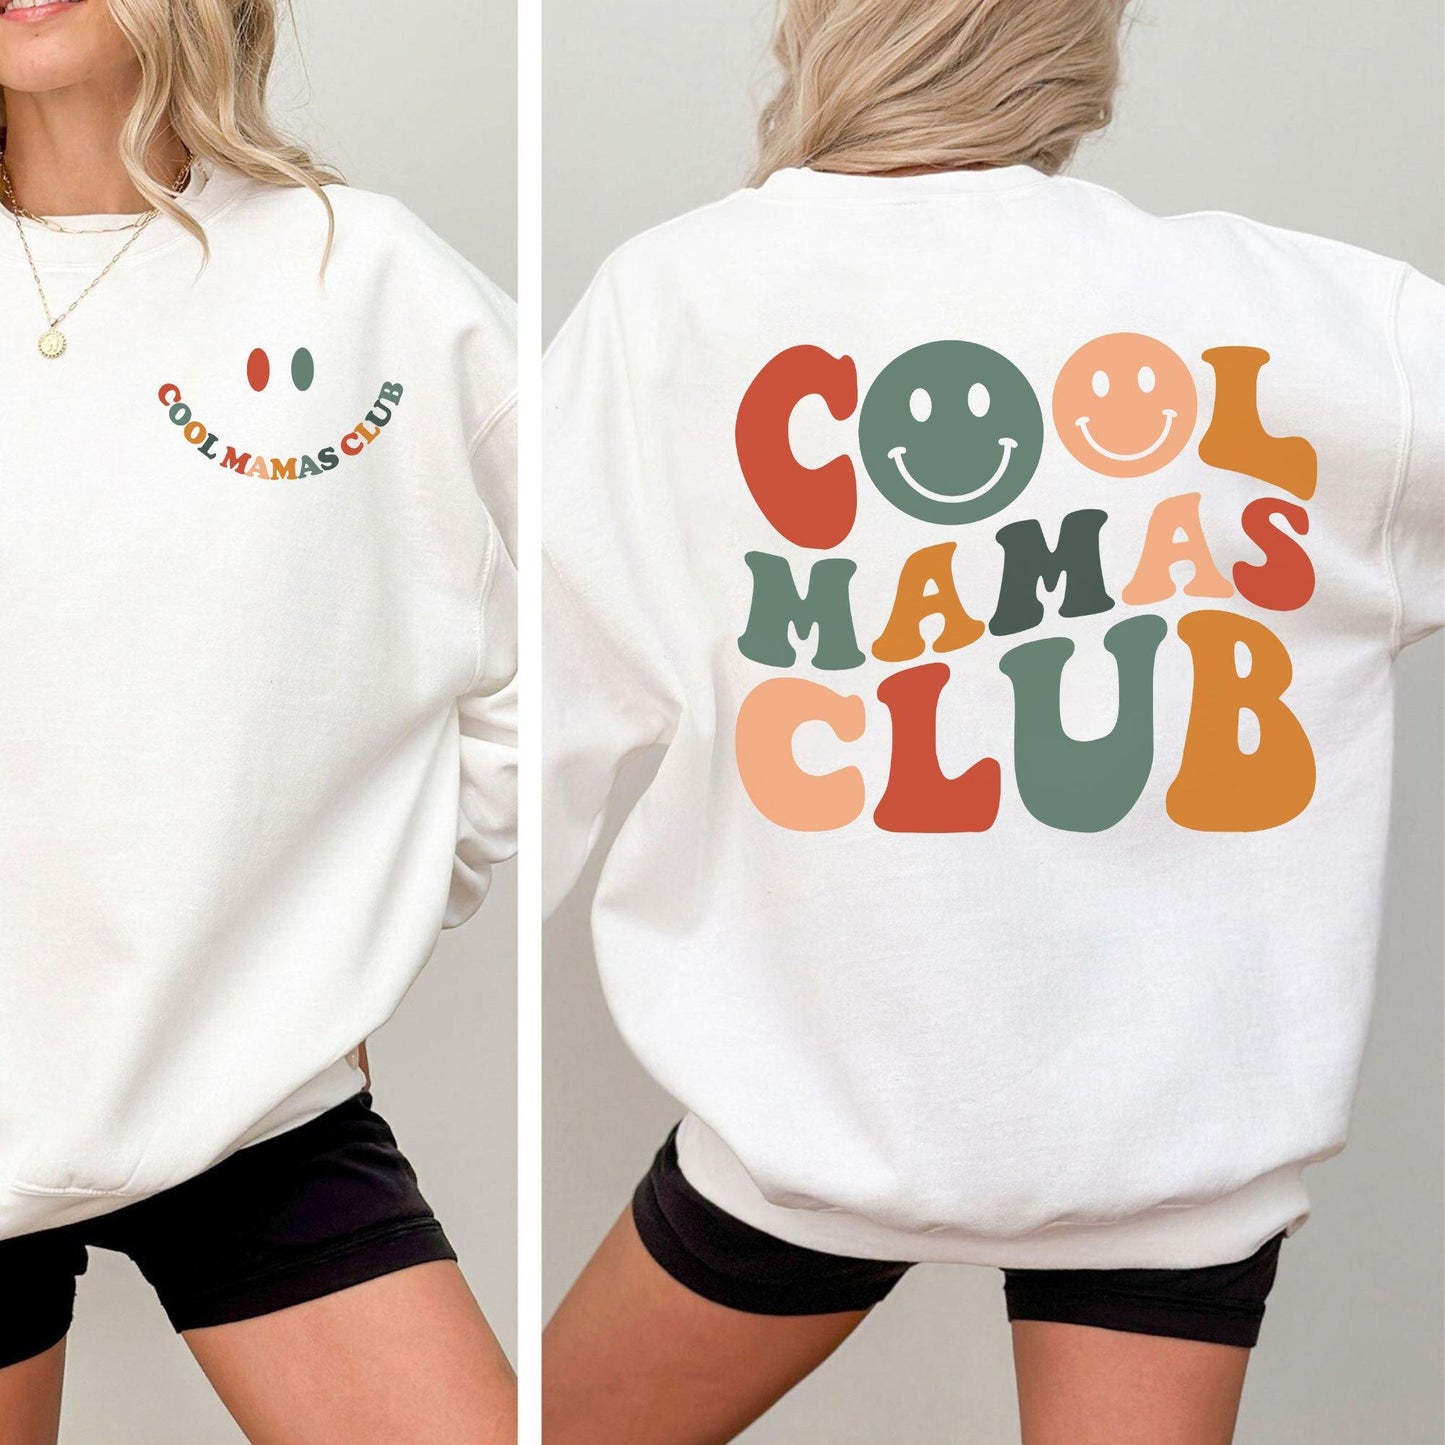 Cooles Mamas Club Sweatshirt und Hoodie – Cooles Mamas Club Shirt - GiftHaus